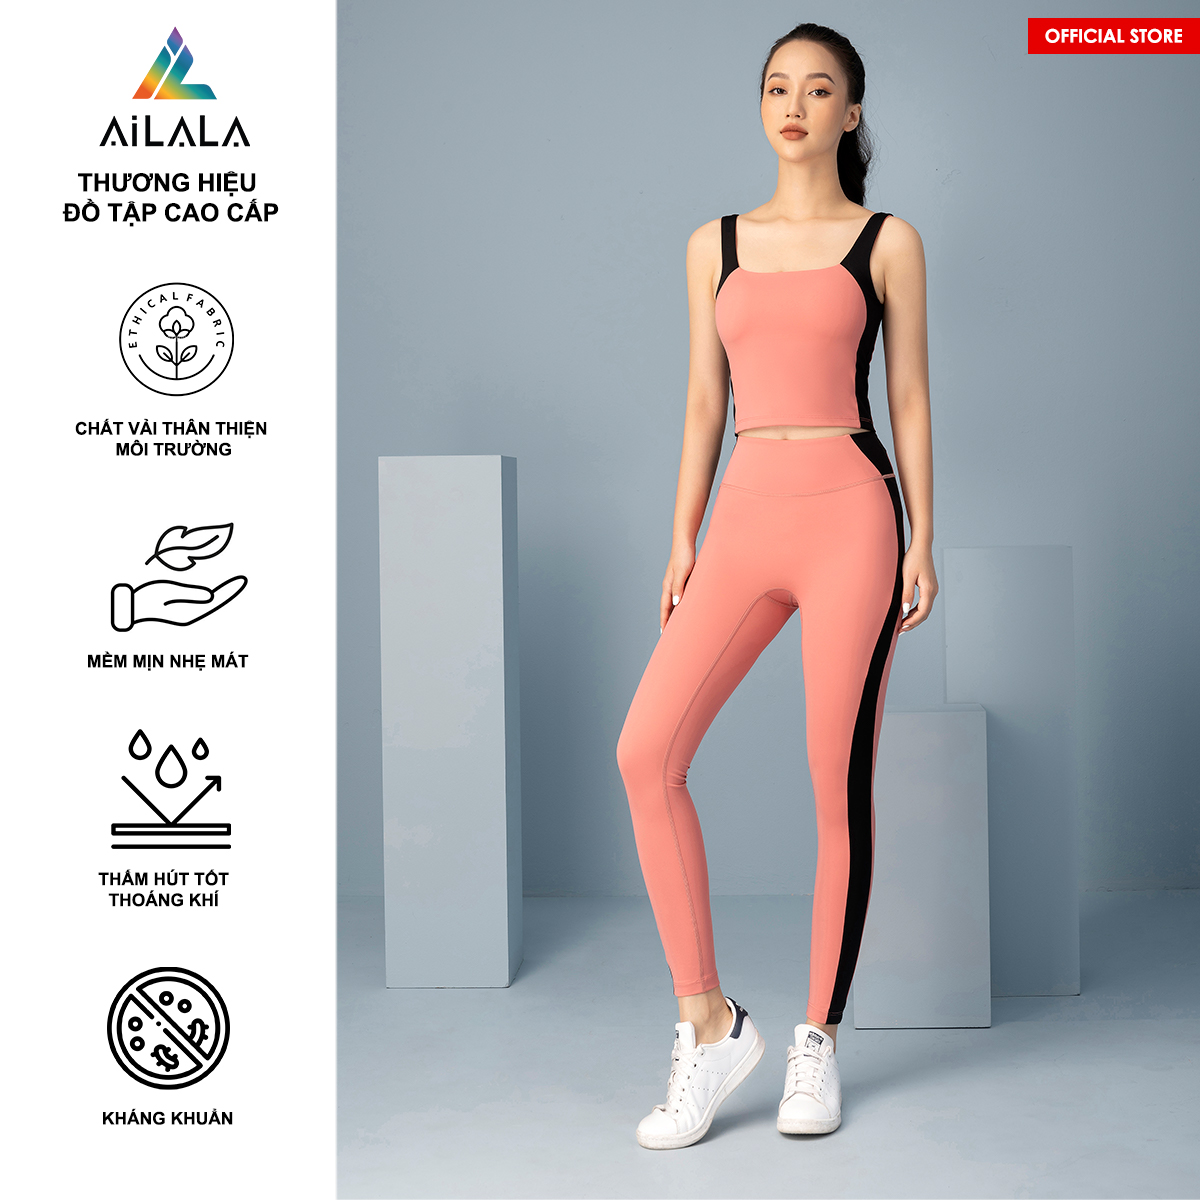 Bộ quần áo thể thao nữ AiLALA LUX16B, Đồ tập Yoga Gym Pilates, chất vải Hi-tech cao cấp